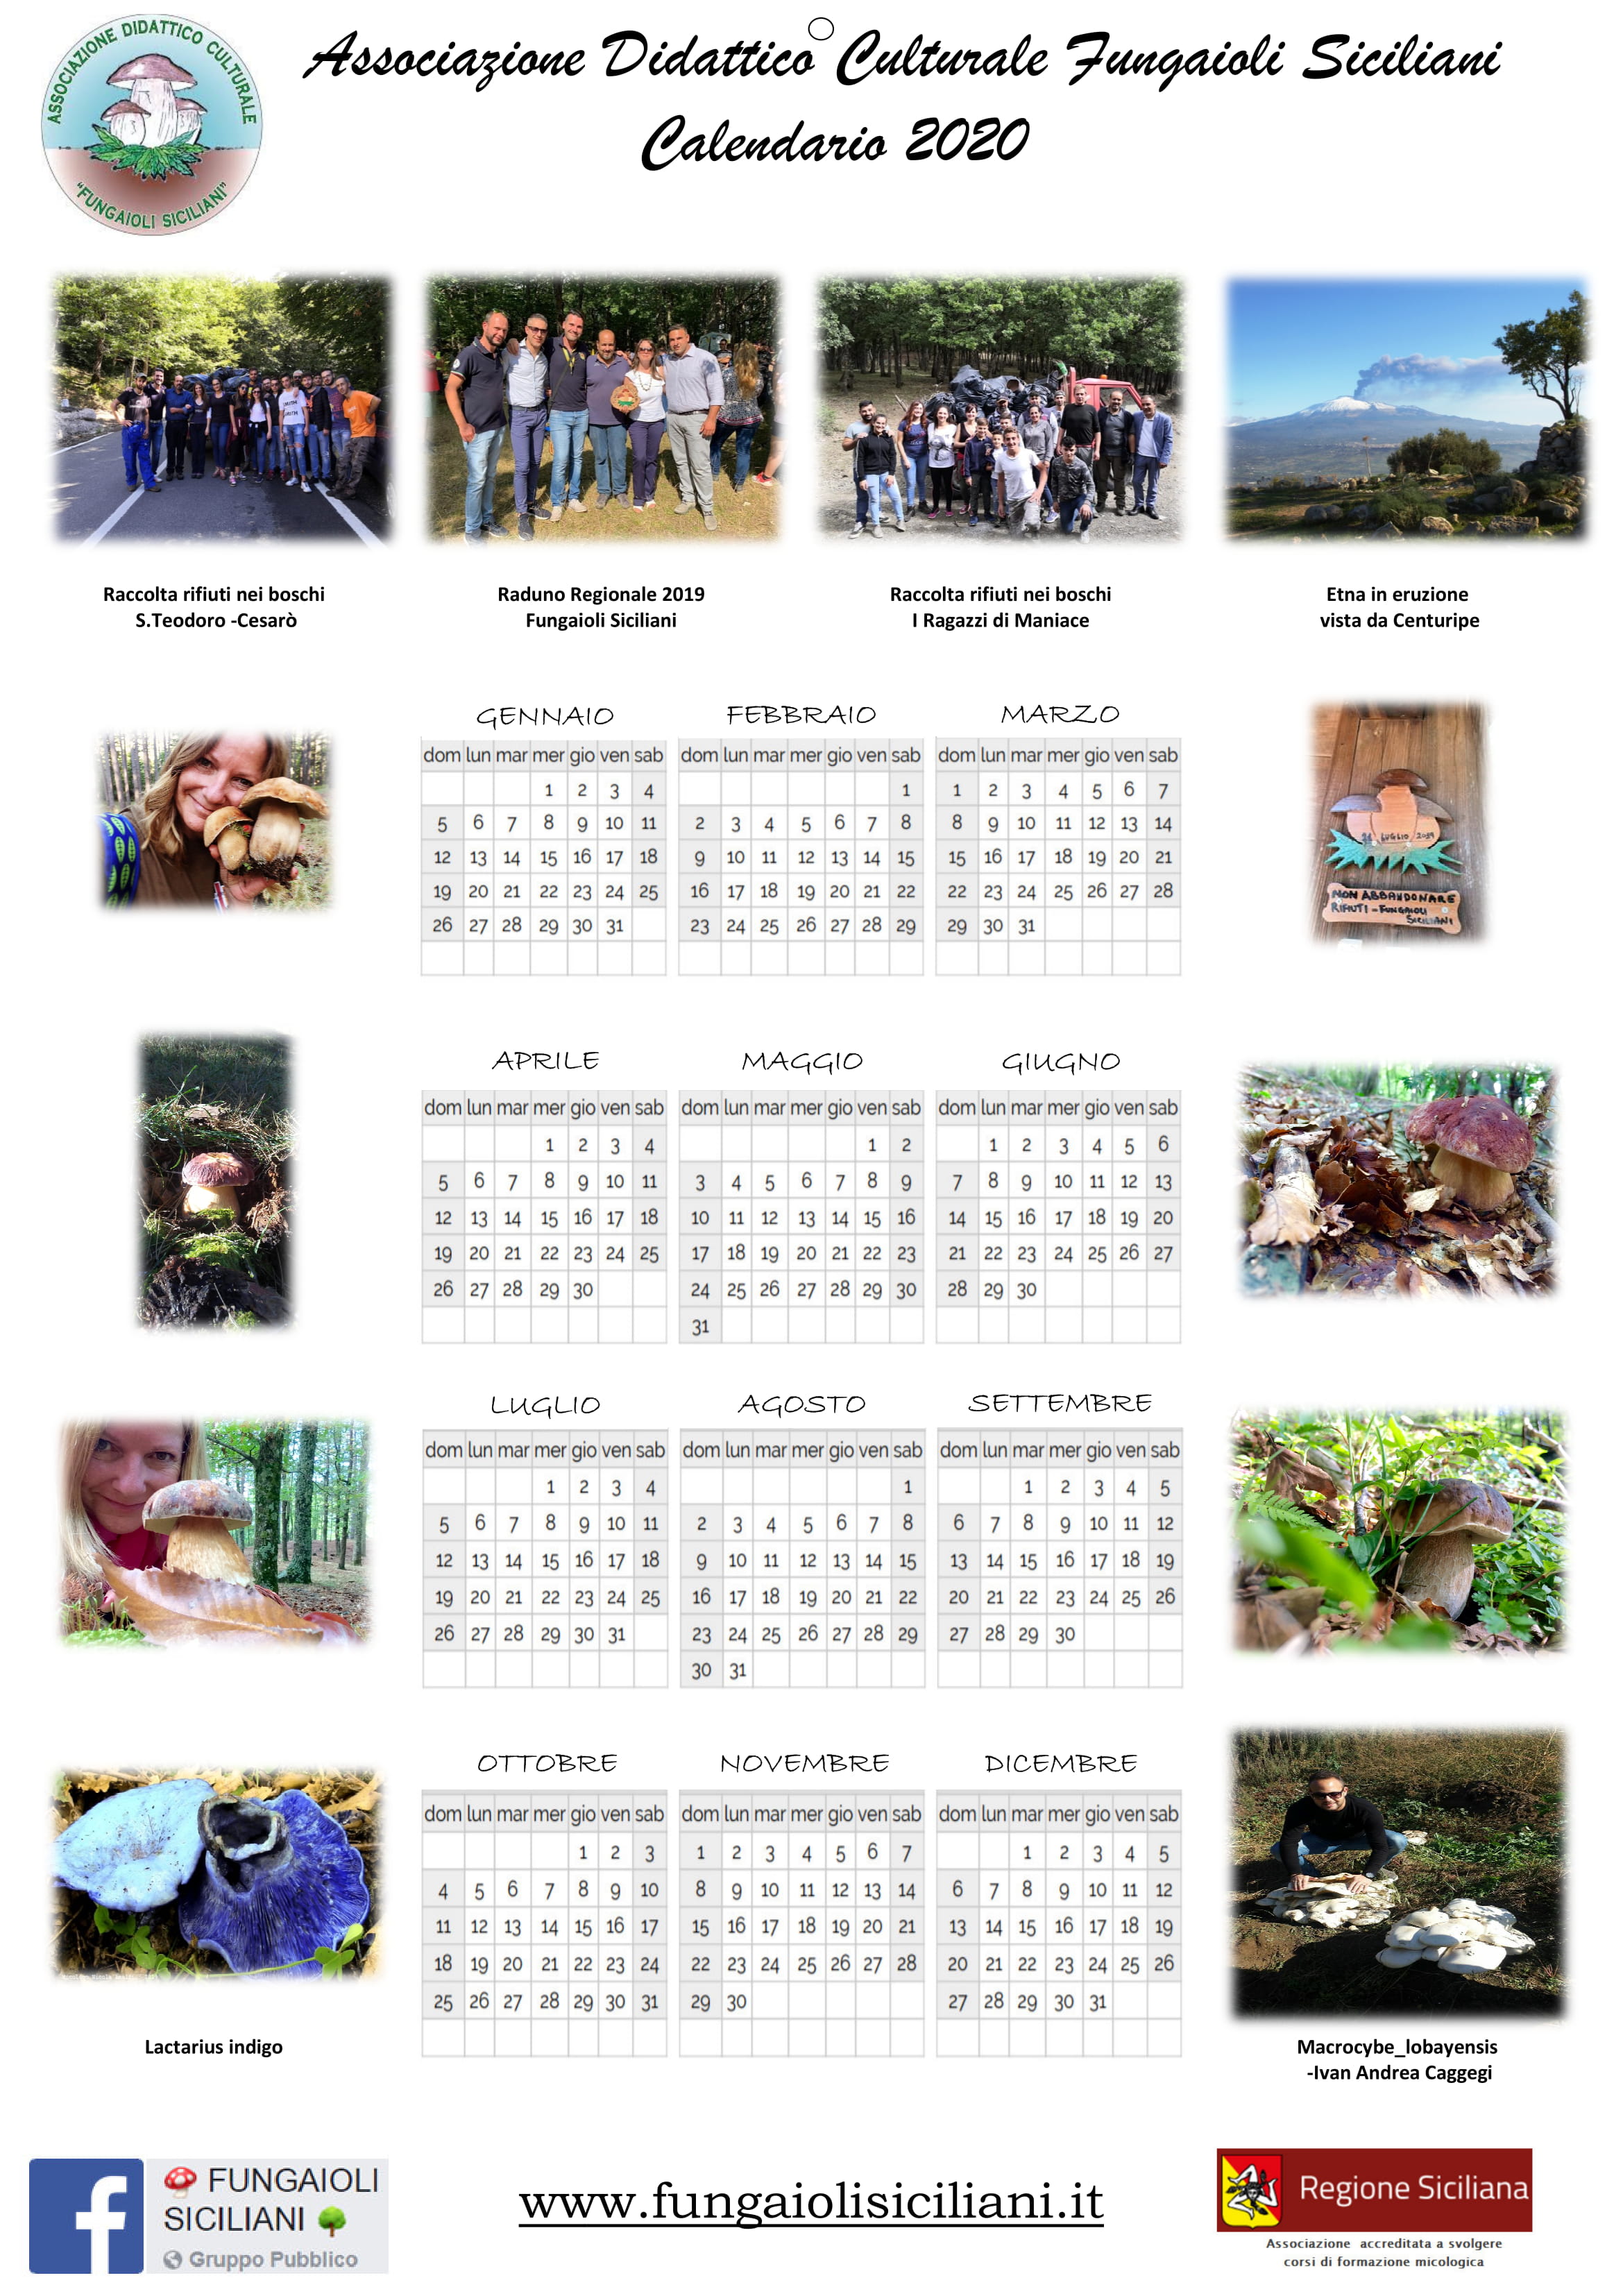 Calendario_2020_-_Rosita_Rugna_3-1.jpg - 914,46 kB